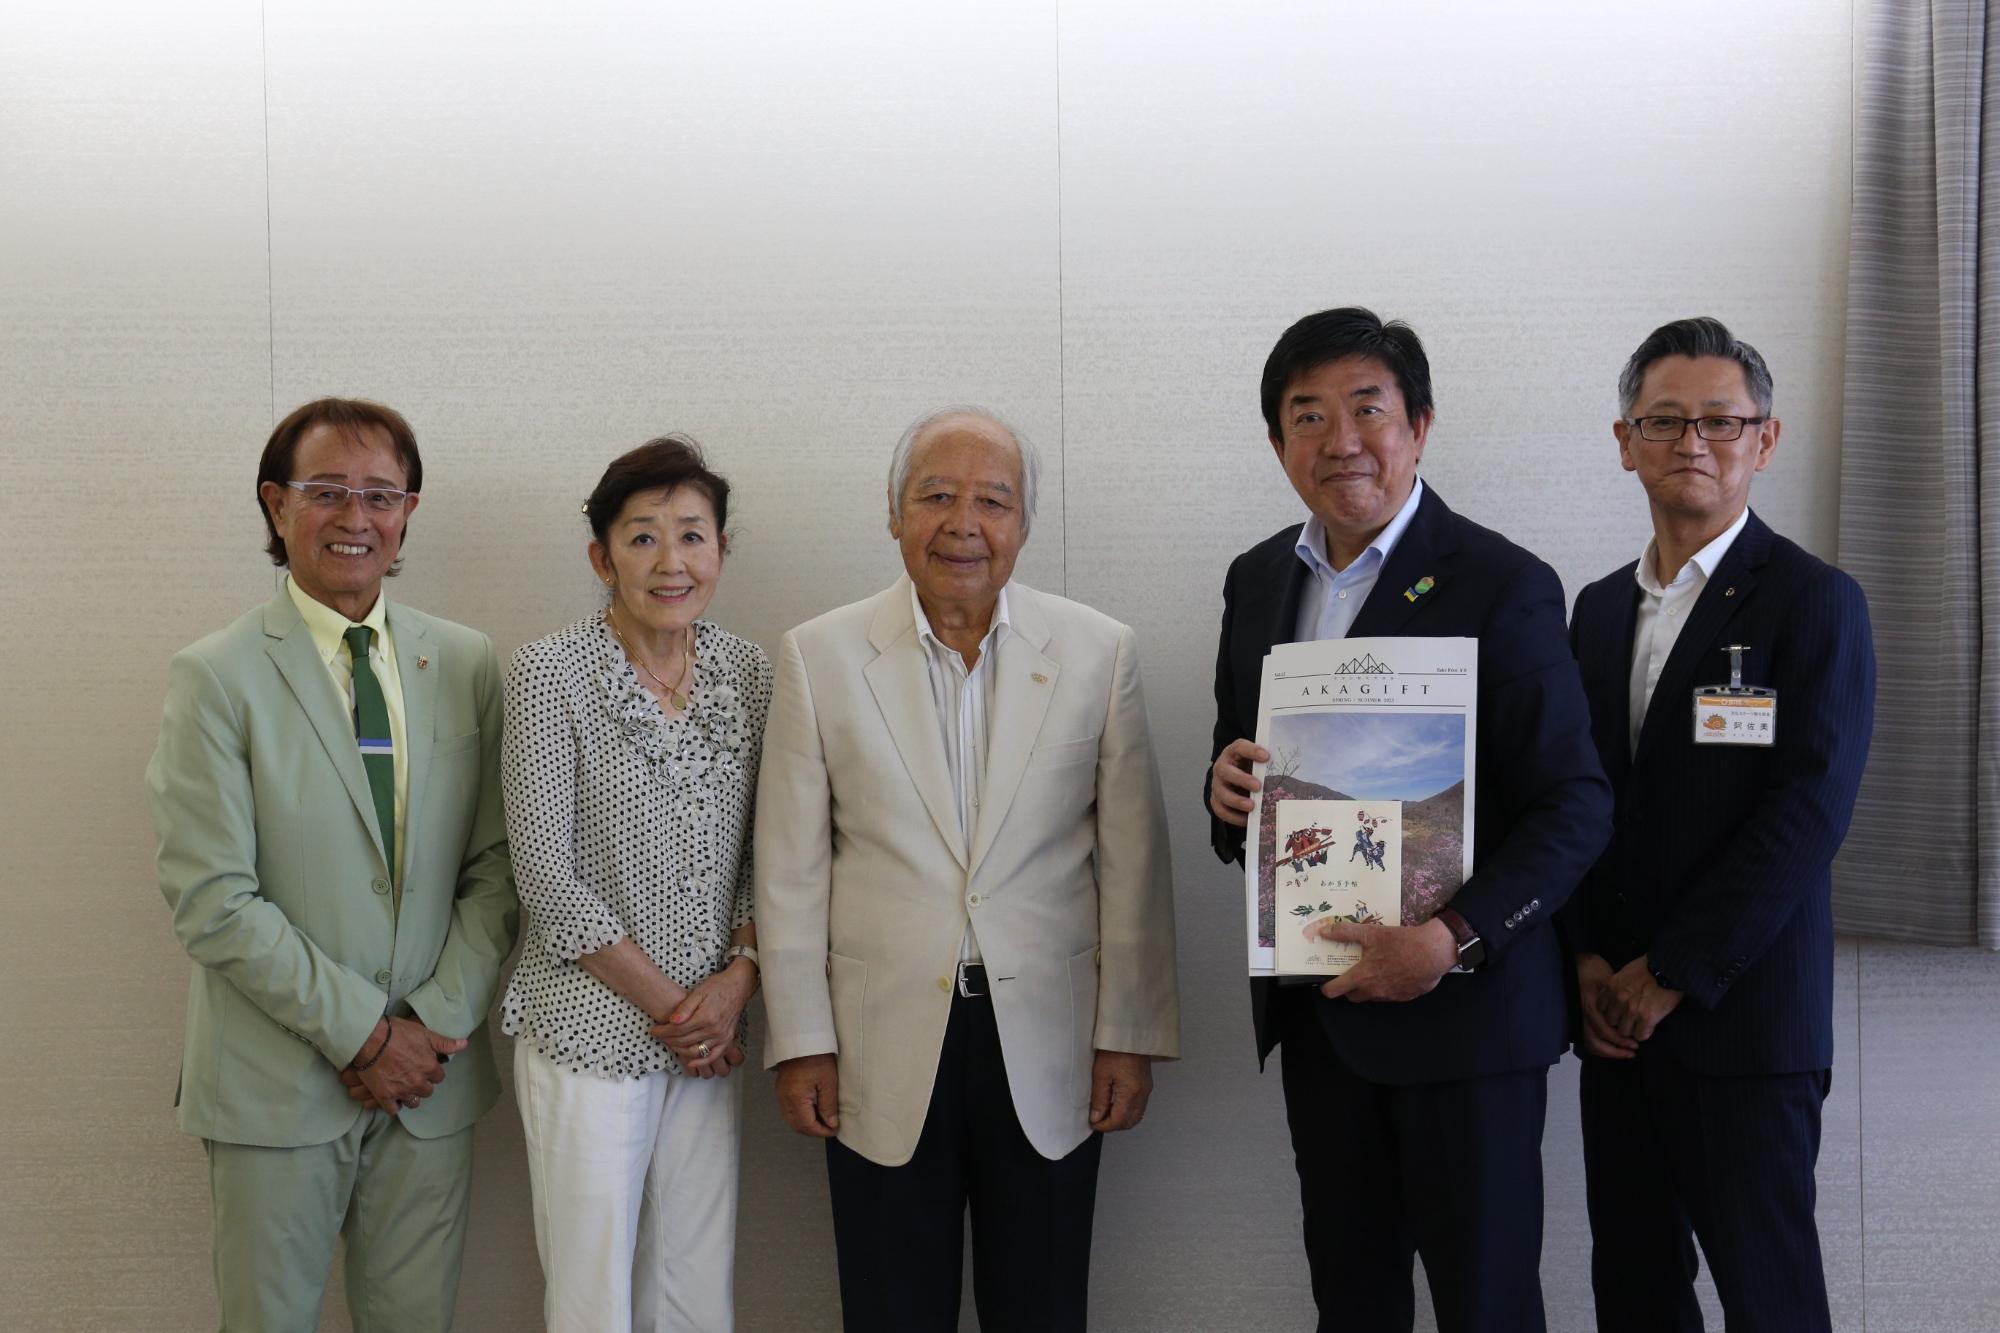 左から徳永詢さん、猪谷さんの妻、猪谷千春さん、山本市長、阿佐美文化スポーツ観光部長